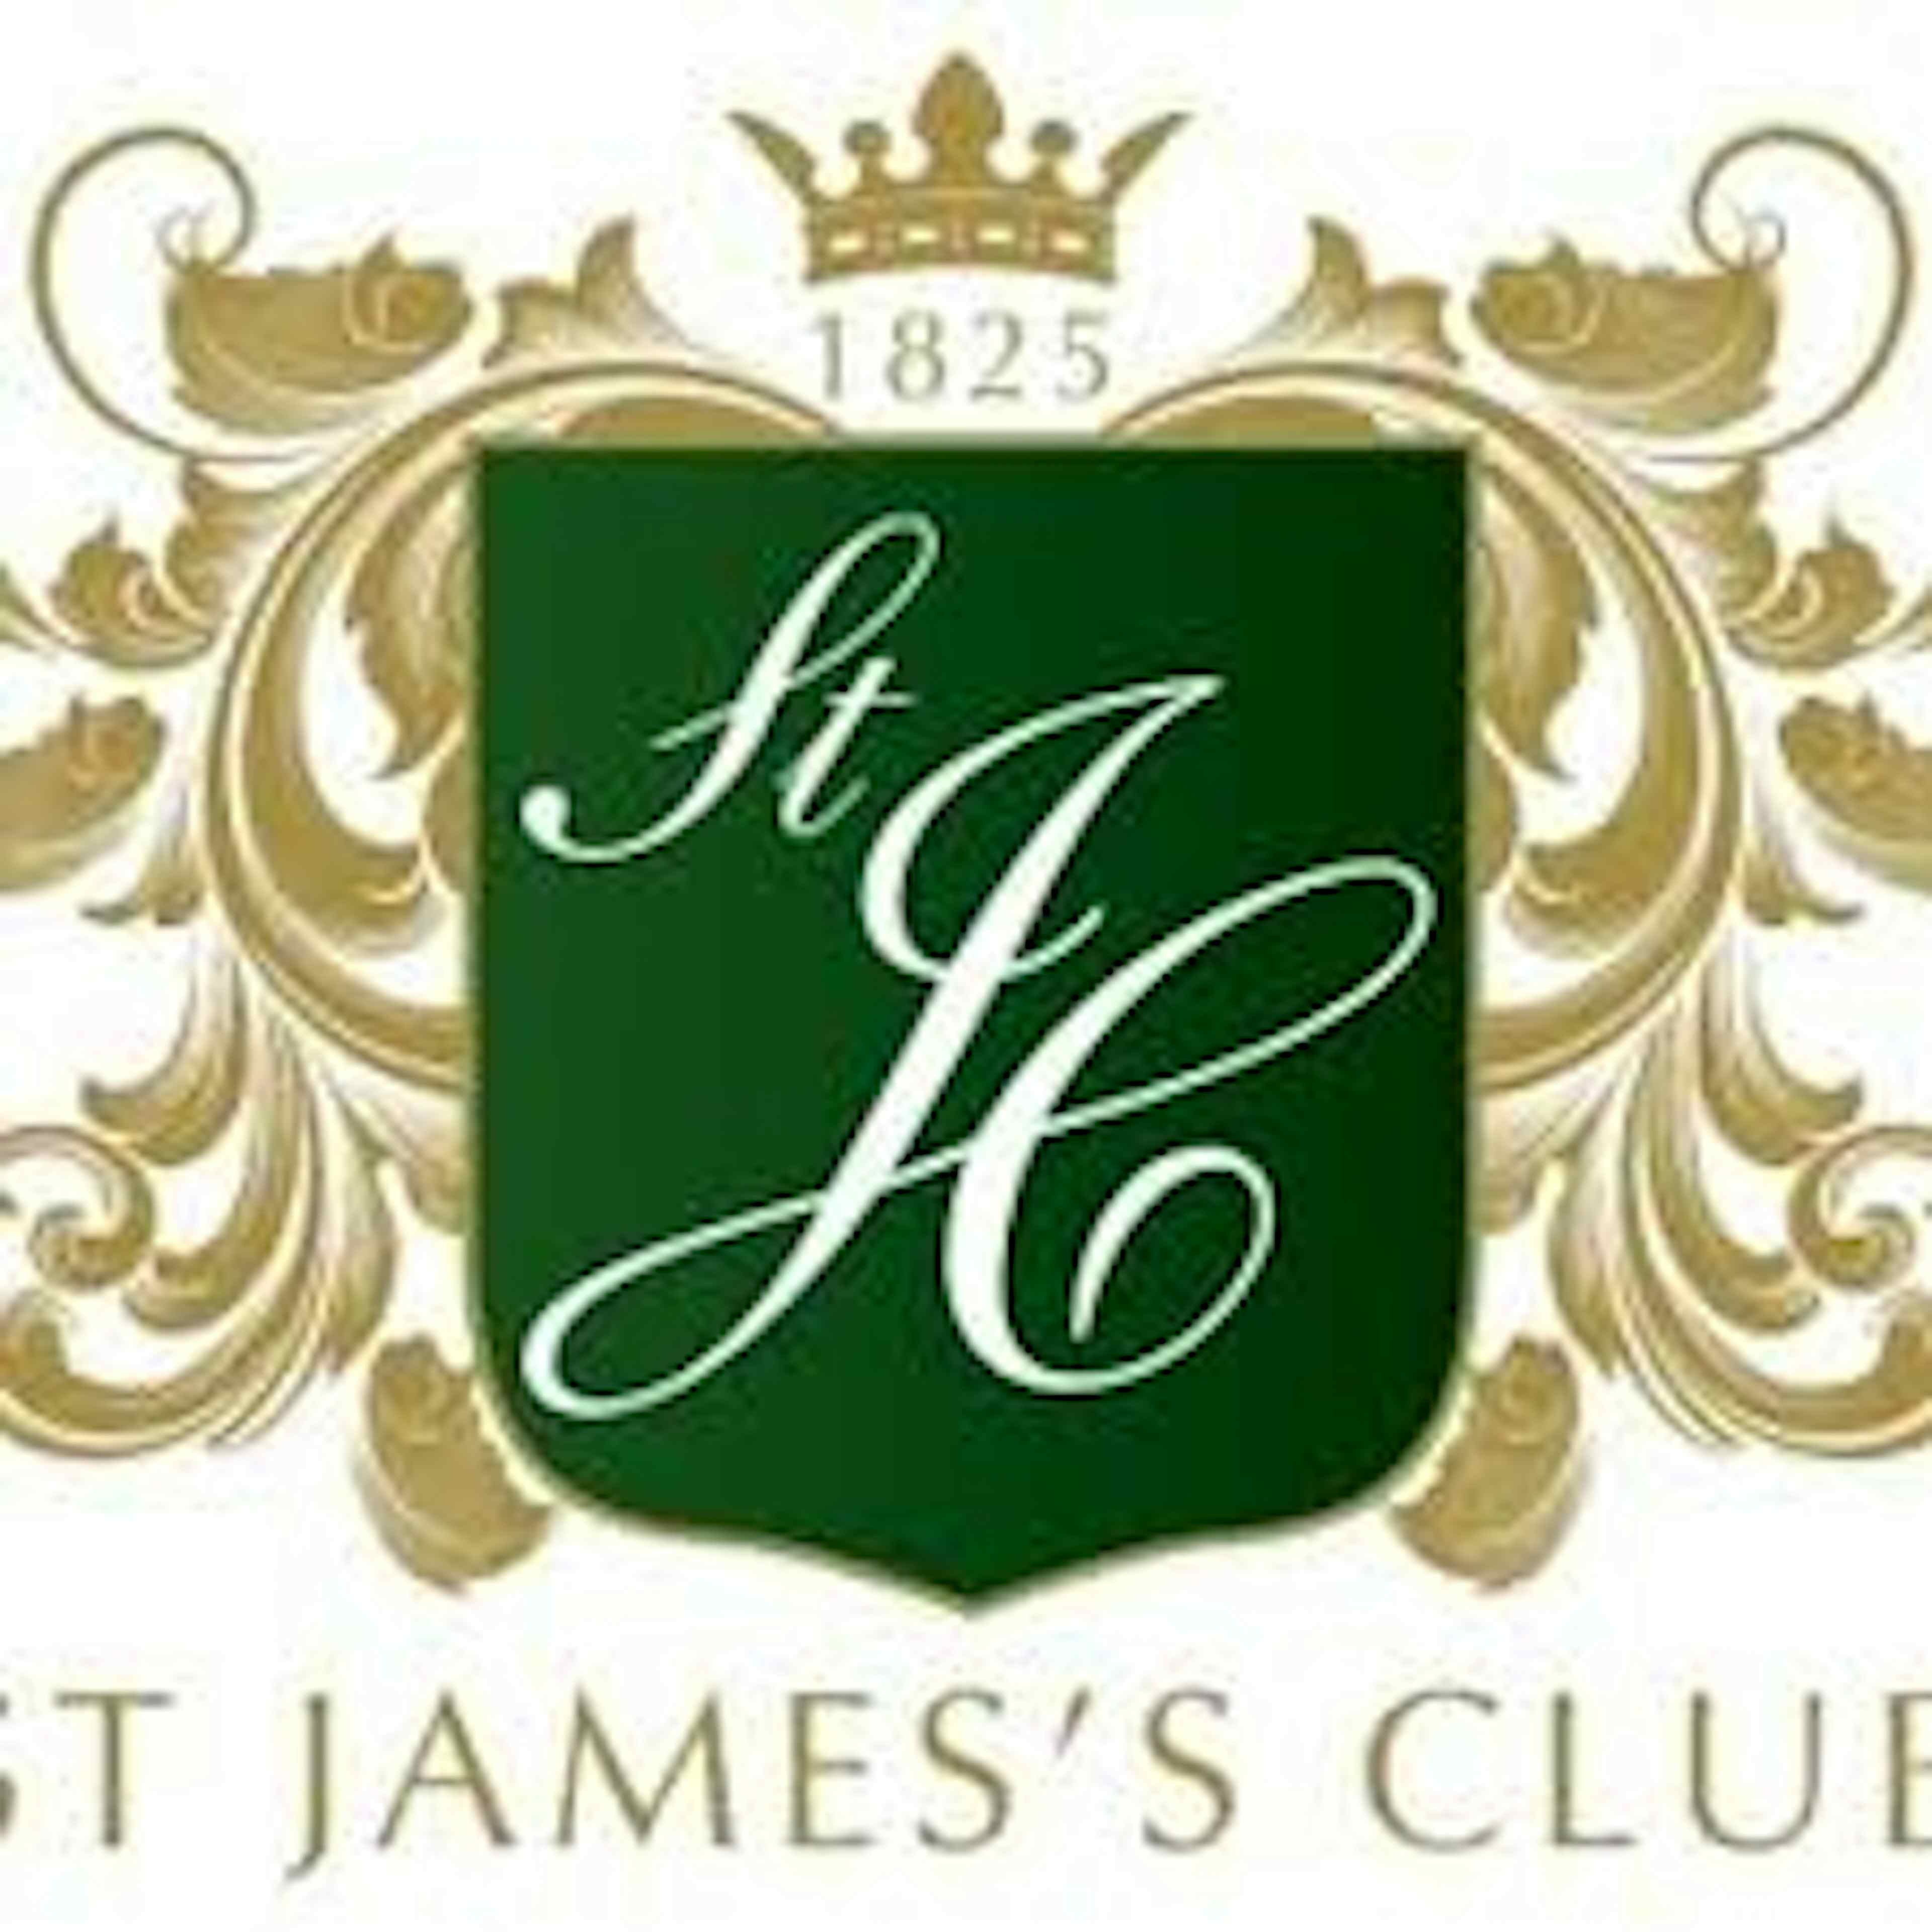 St James's Club - Clarendon Suite image 2